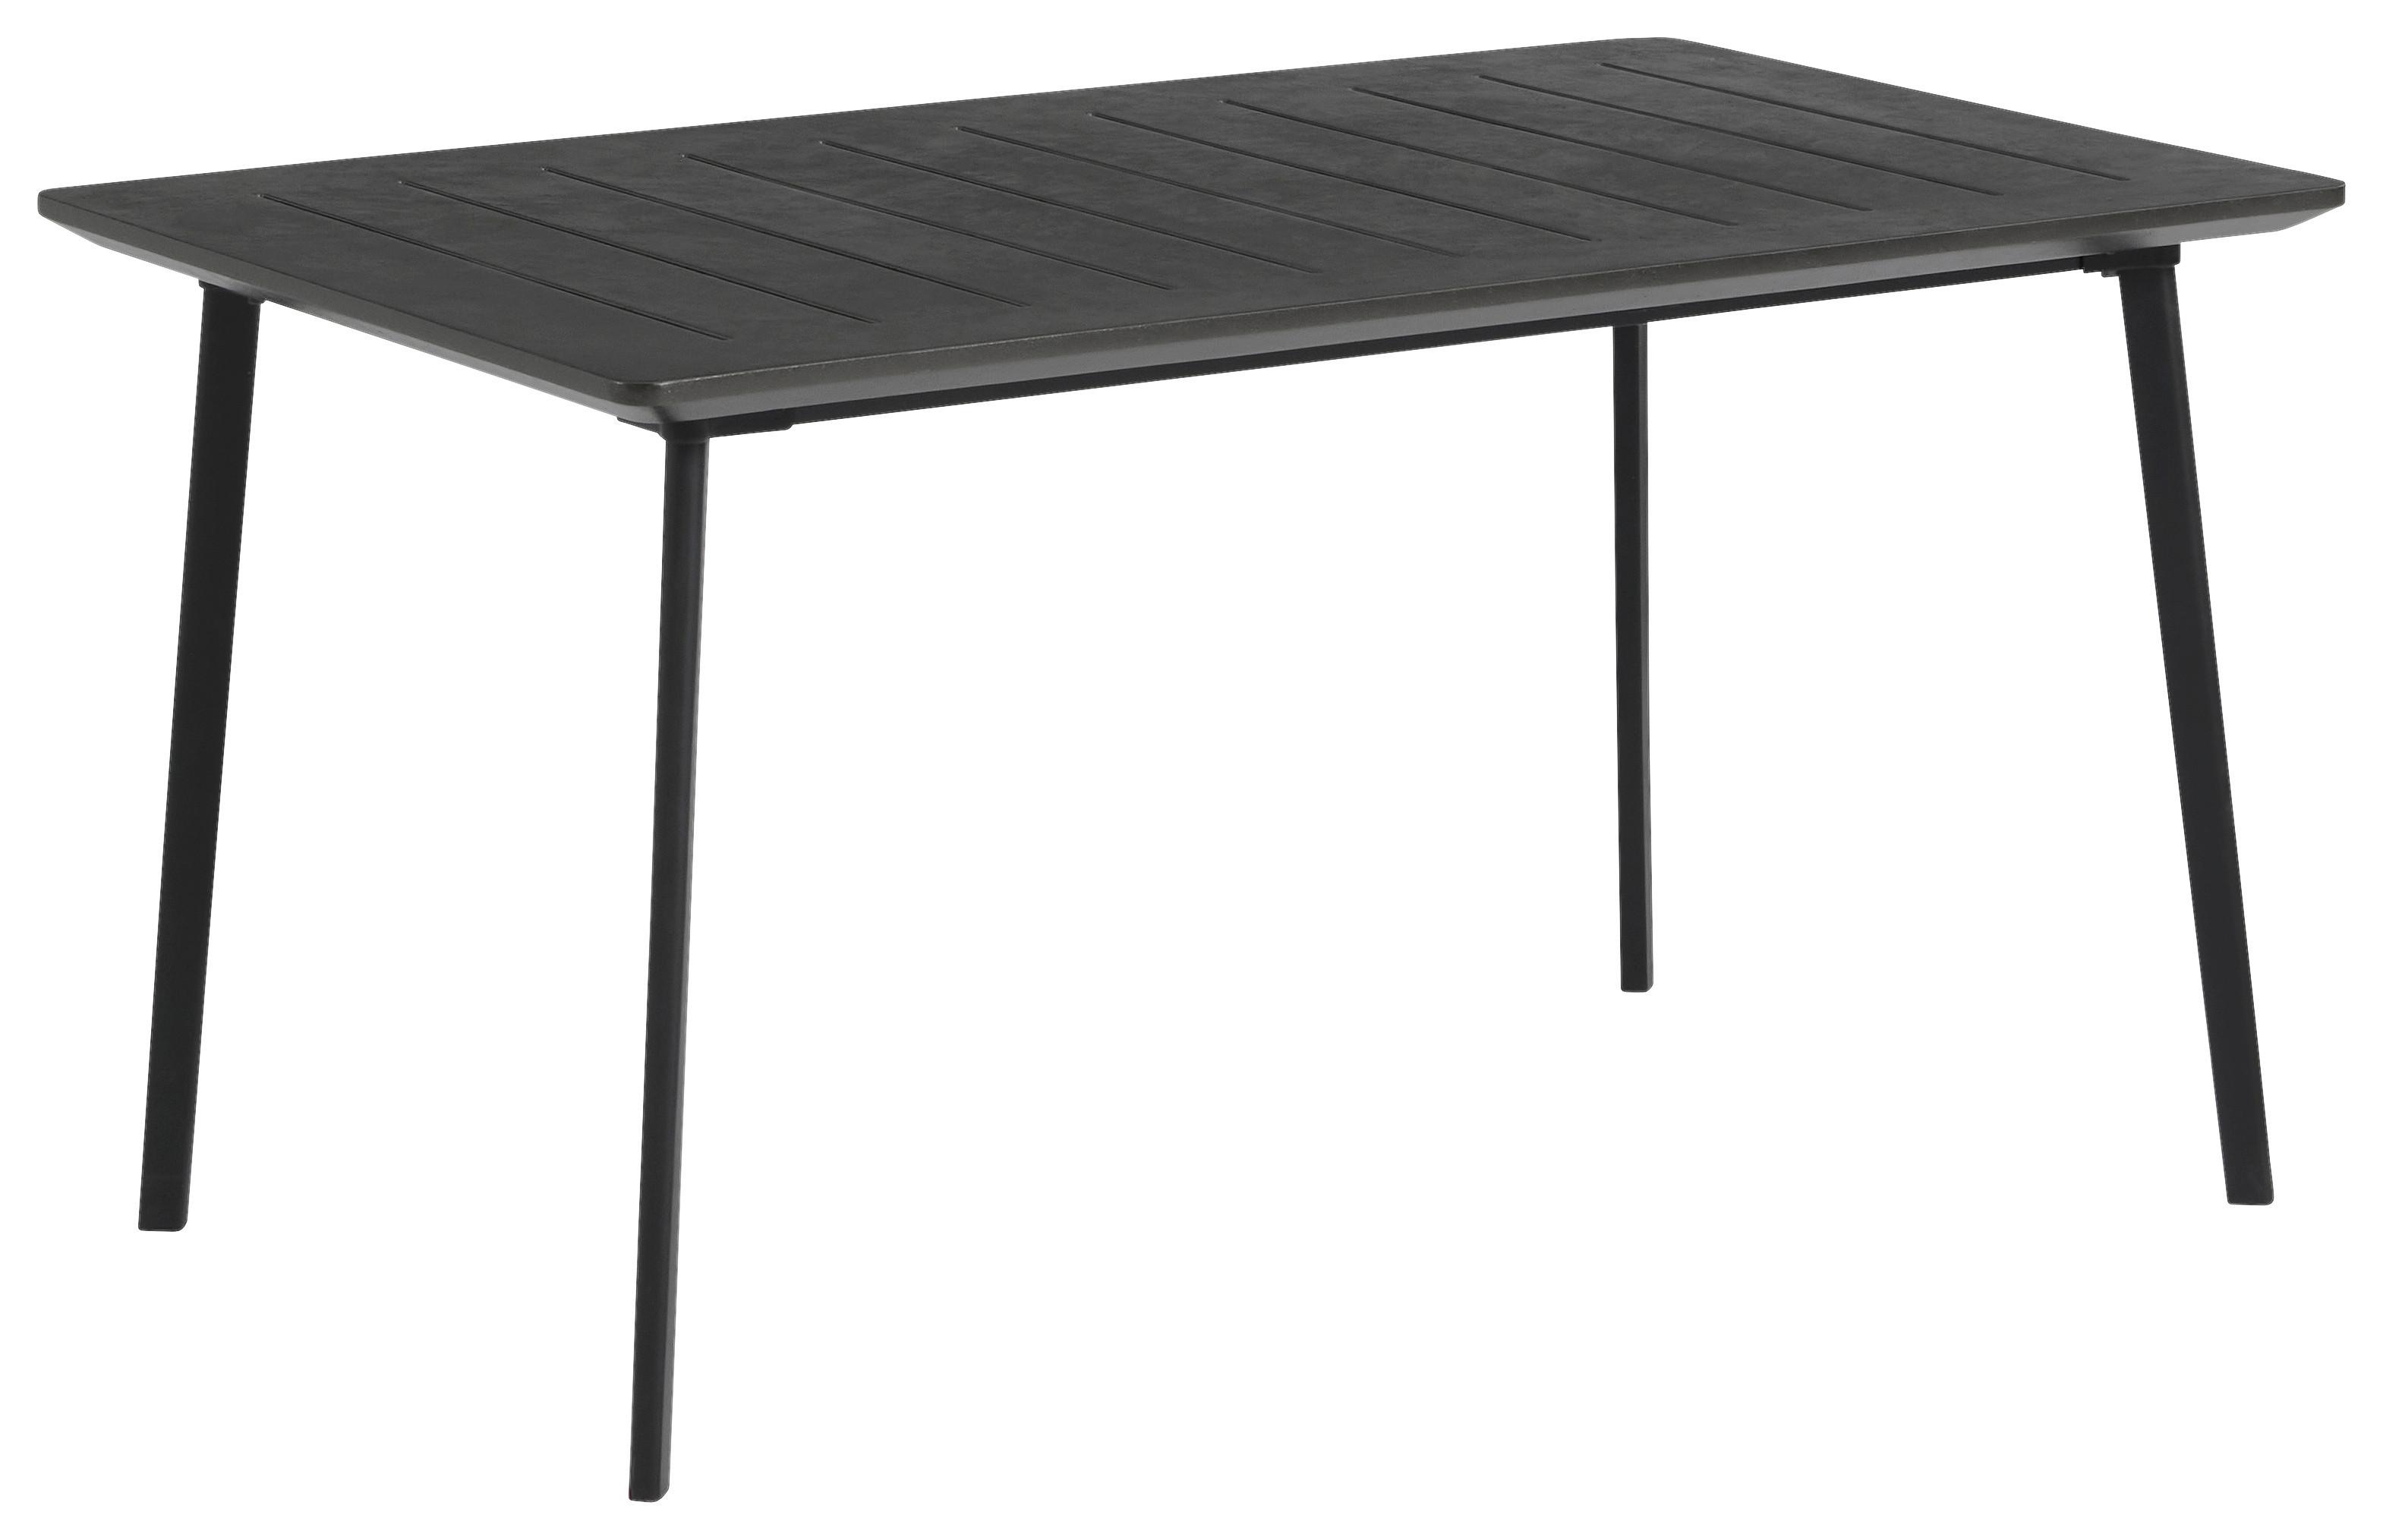 Gartentisch Metalea Table Metall L: 146 cm - Schwarz, Basics, Kunststoff/Metall (146/75/87cm) - Keter